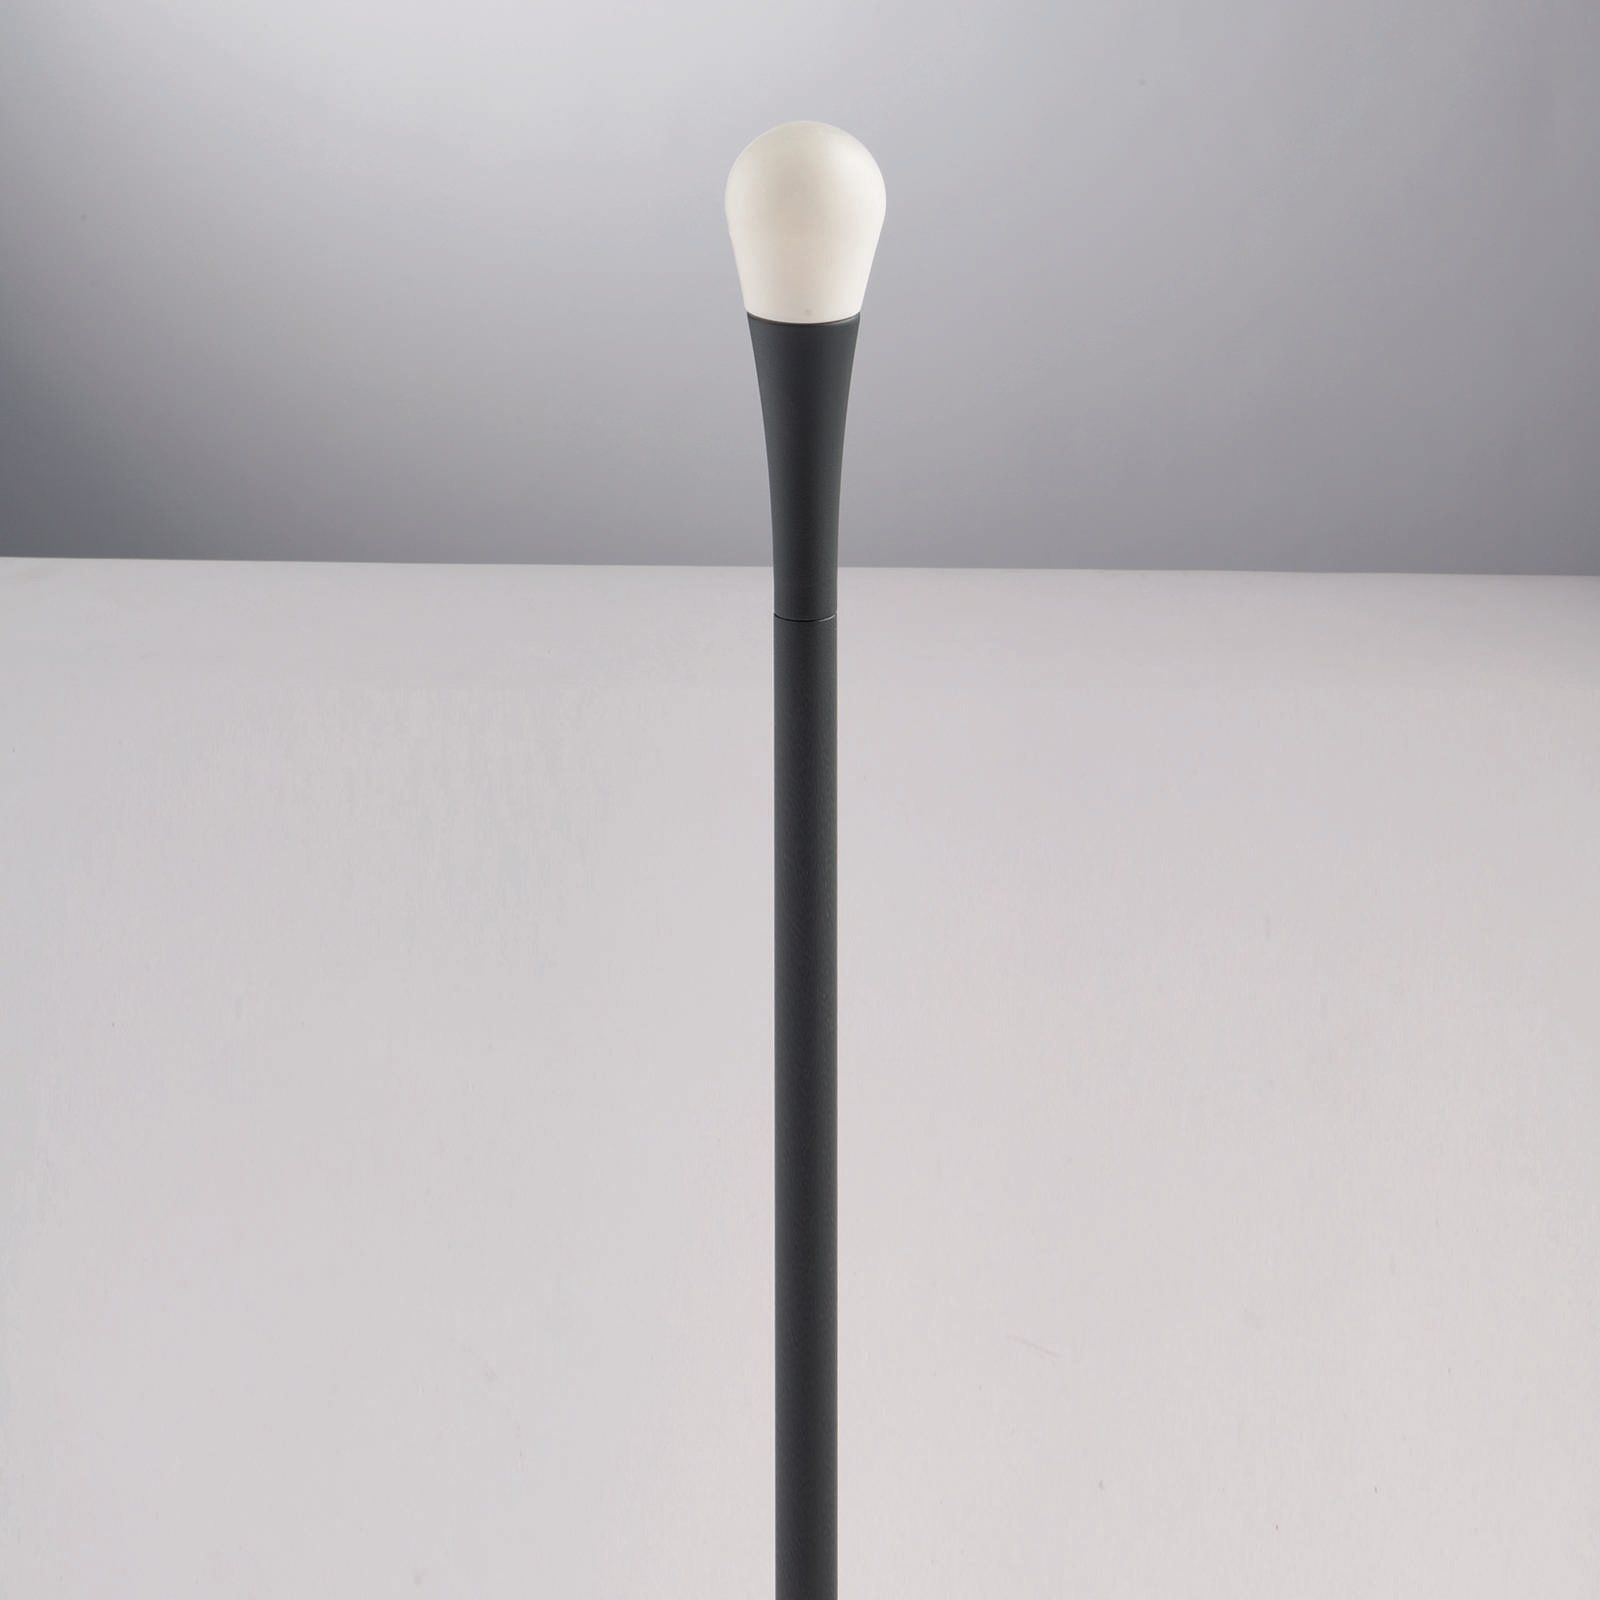 Eco-Light Chodníkové svietidlo Drop, IP65, 74 cm vysoké, odliatok hliníkovej zliatiny, plast odolný voči počasiu, G9, 28W, K: 74cm